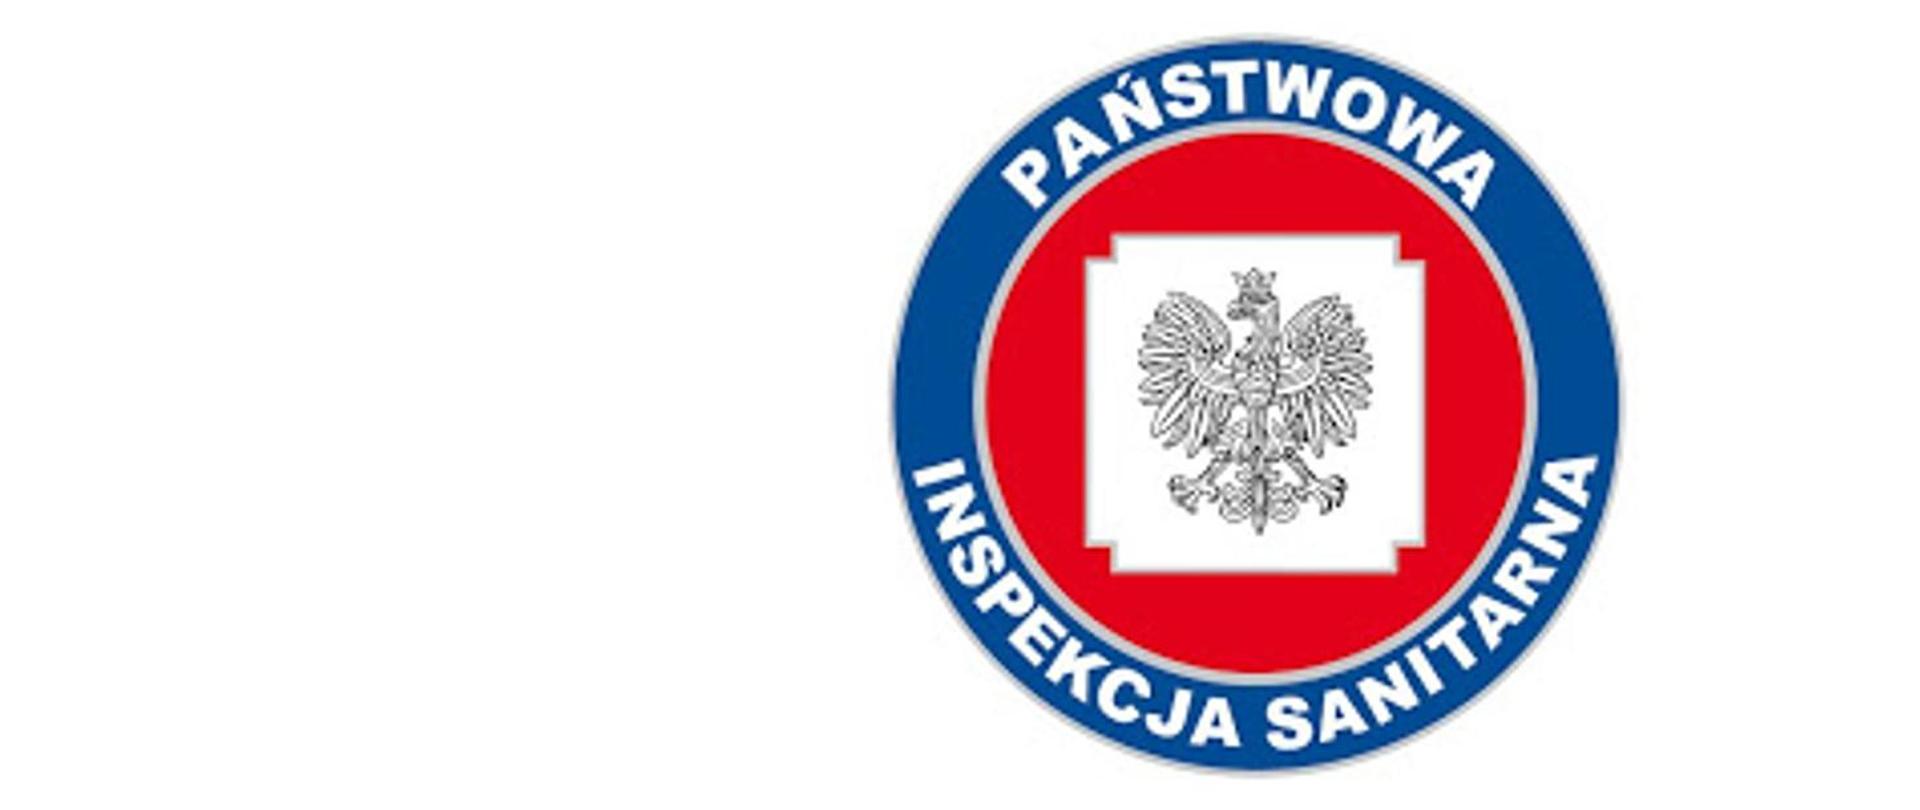 Logo Państwowa Inspekcja Sanitarna